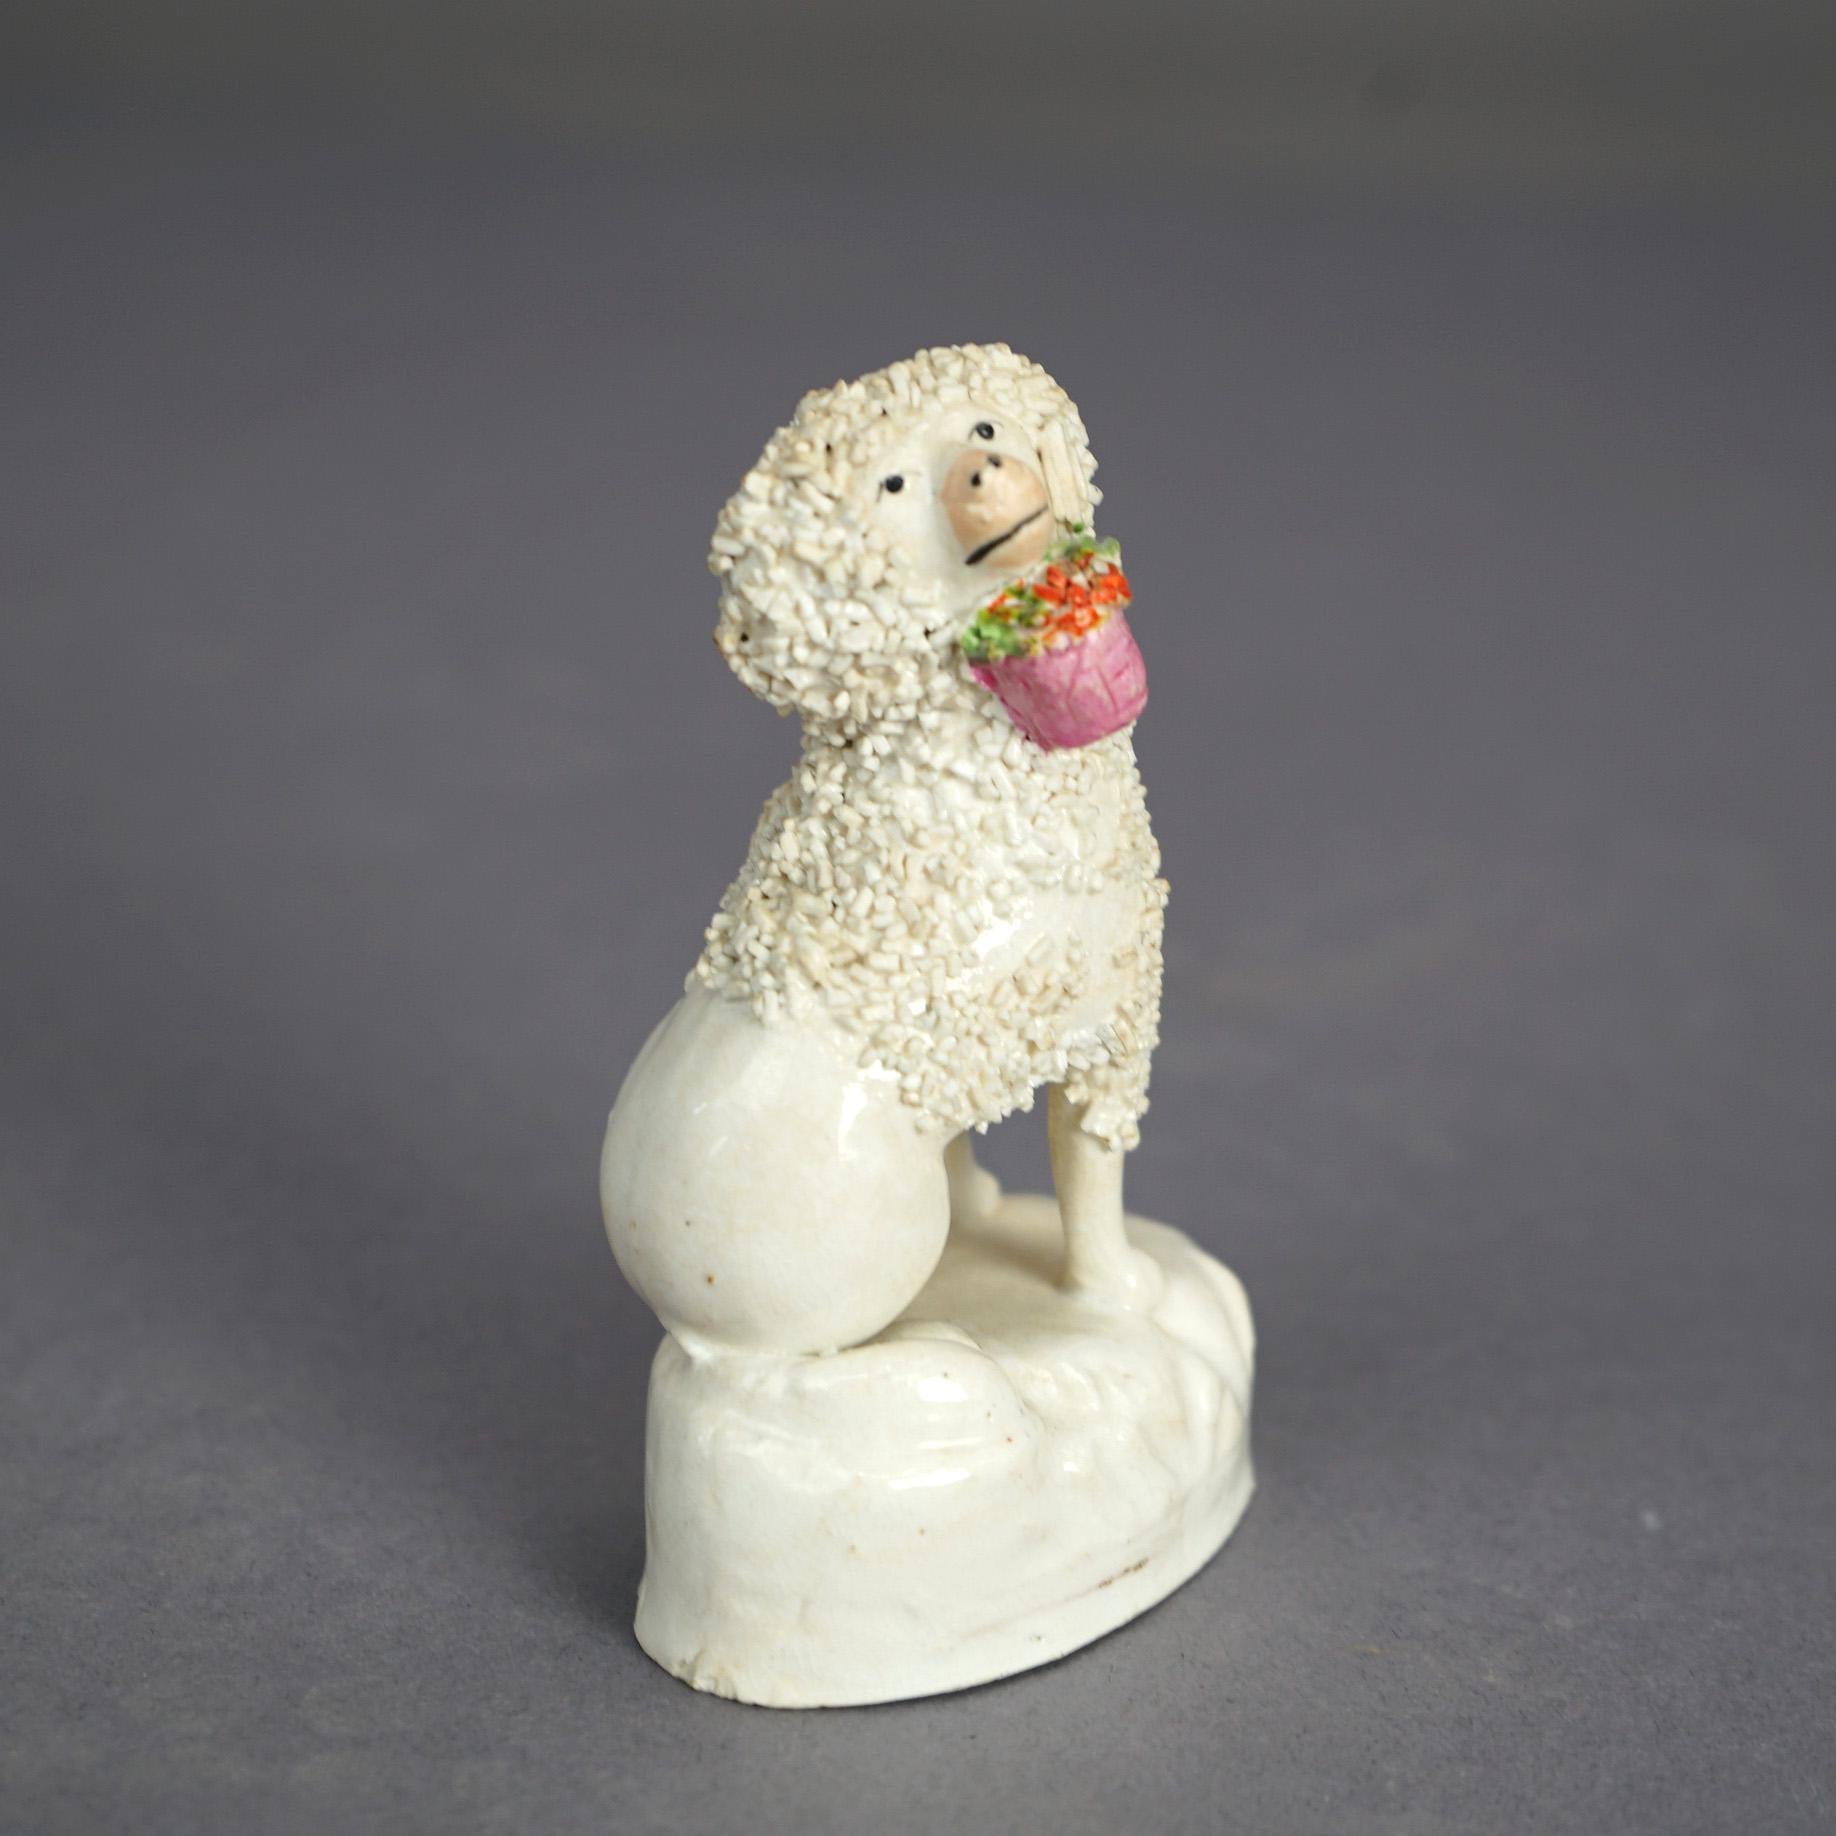 Antique Staffordshire Polychromed Porcelain Zebra & Poodle Dog Figures C1870 For Sale 5